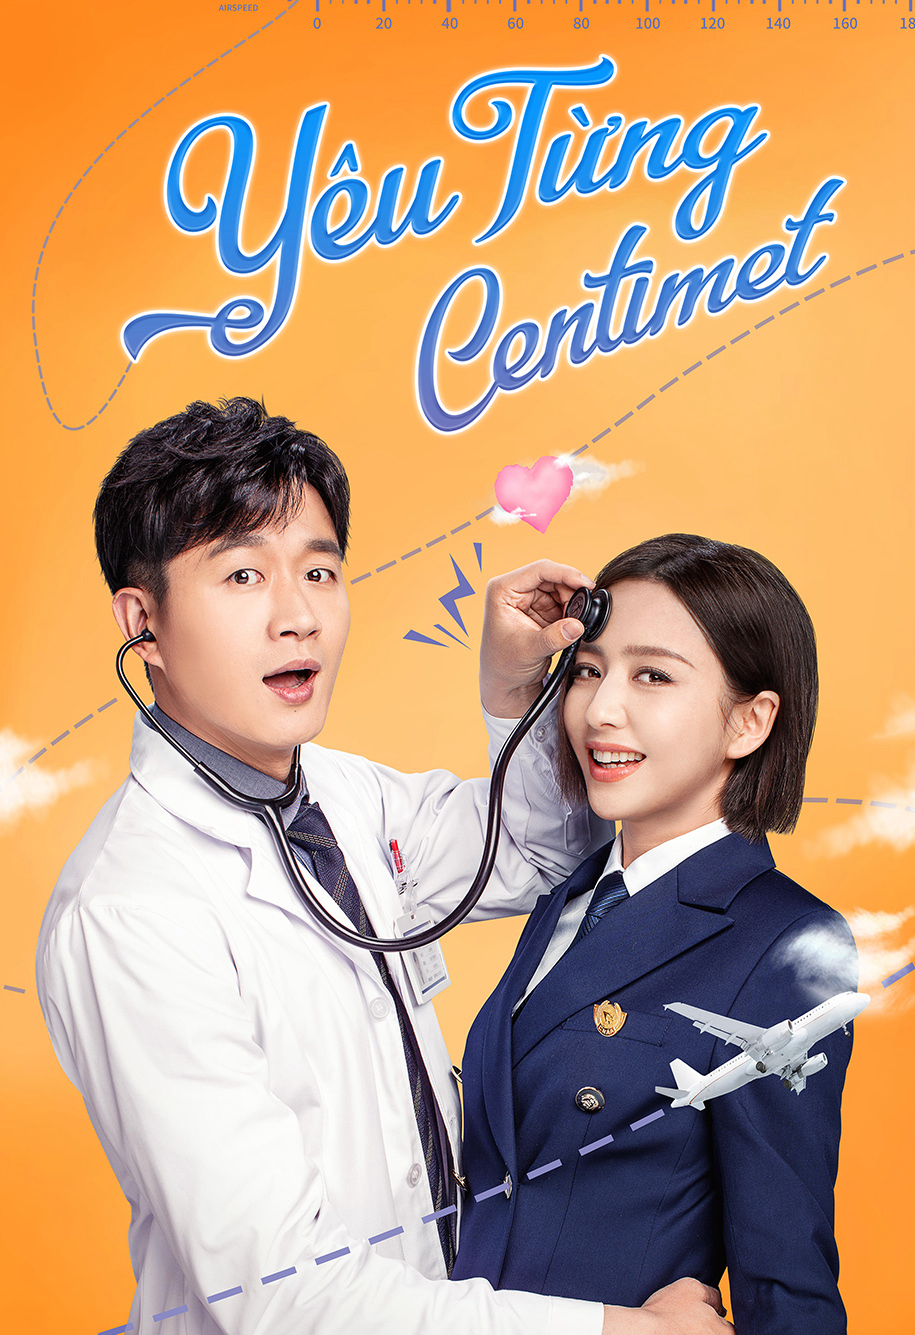 Banner Phim Yêu Từng Centimet (The Centimeter of Love)